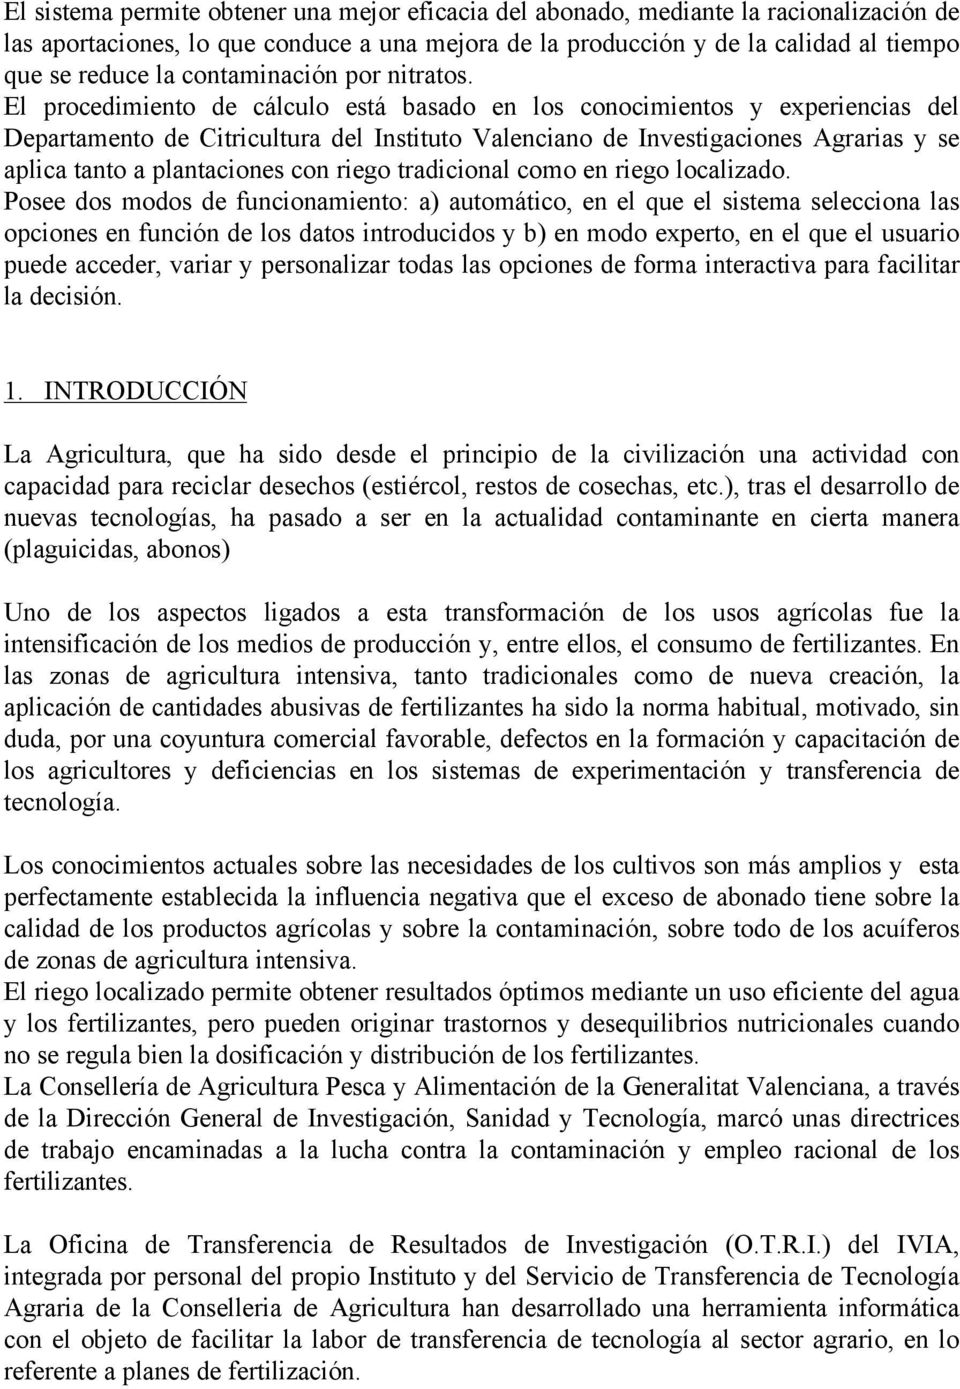 El procedimiento de cálculo está basado en los conocimientos y experiencias del Departamento de Citricultura del Instituto Valenciano de Investigaciones Agrarias y se aplica tanto a plantaciones con